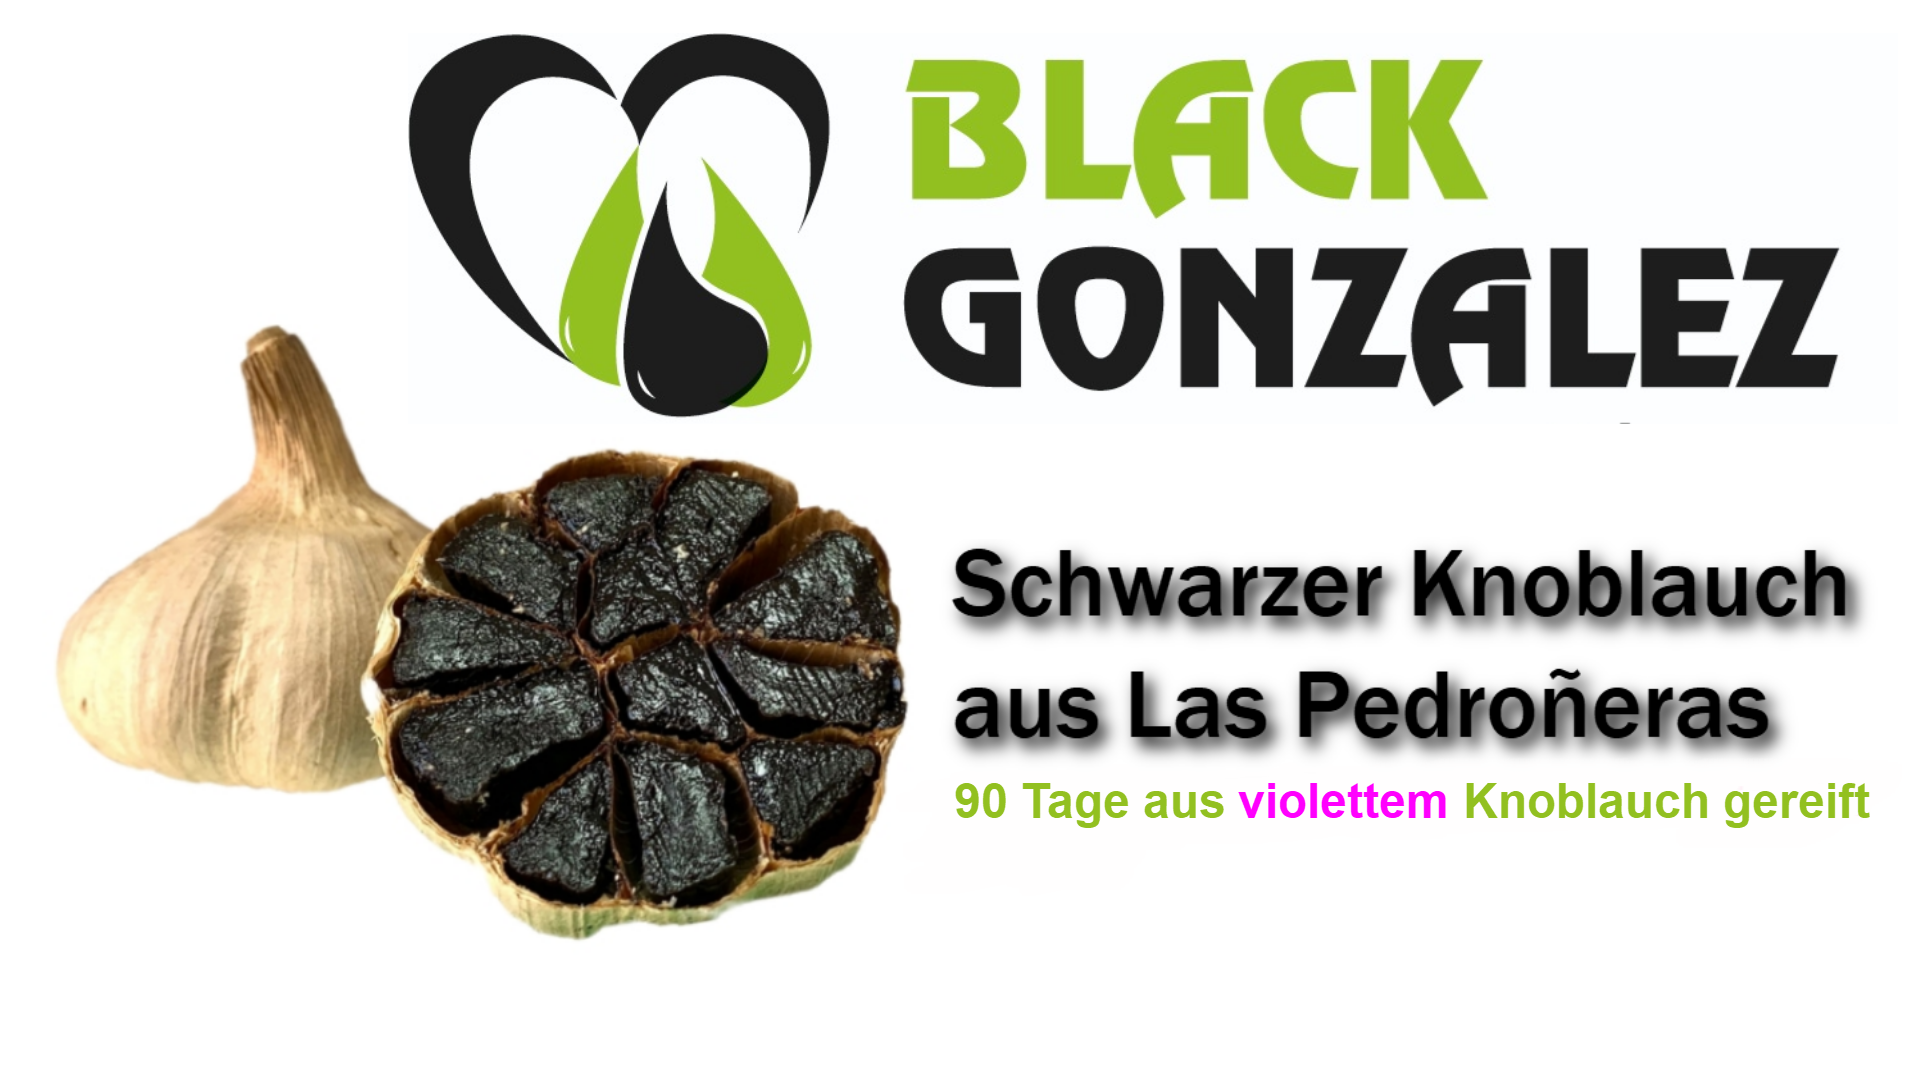 Schwarzer Knoblauch aus Las Pedroñeras Black Gonzalez GmbH - Deutscher Onlineshop